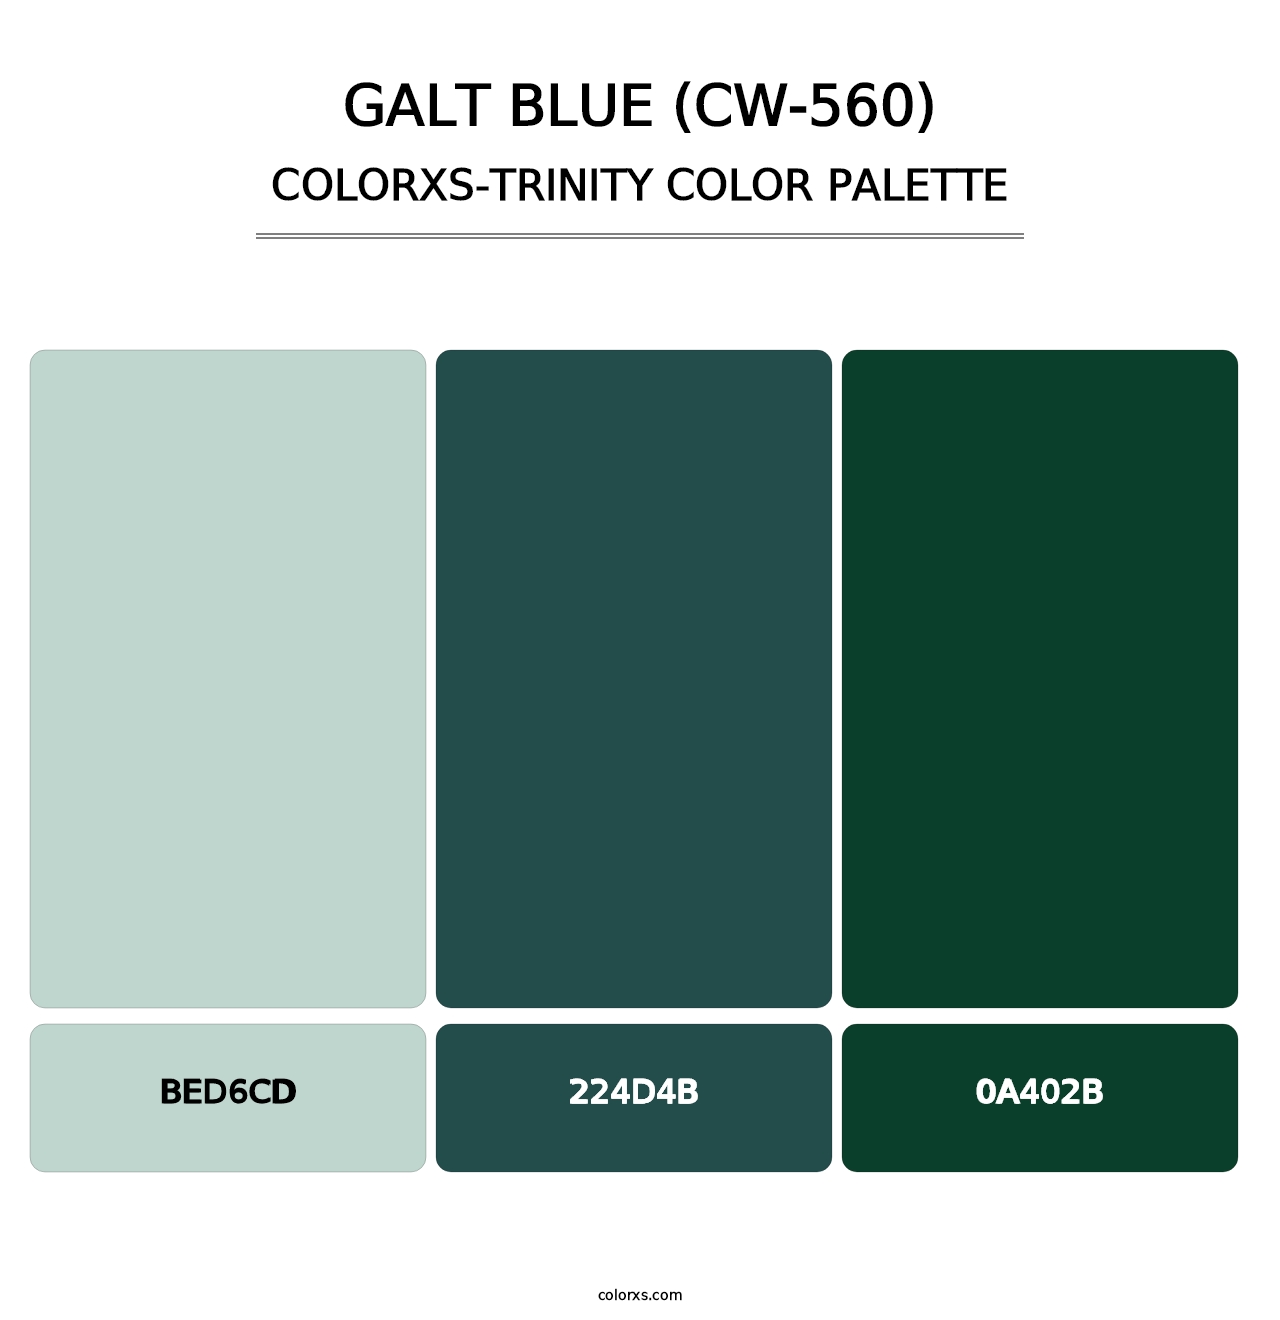 Galt Blue (CW-560) - Colorxs Trinity Palette